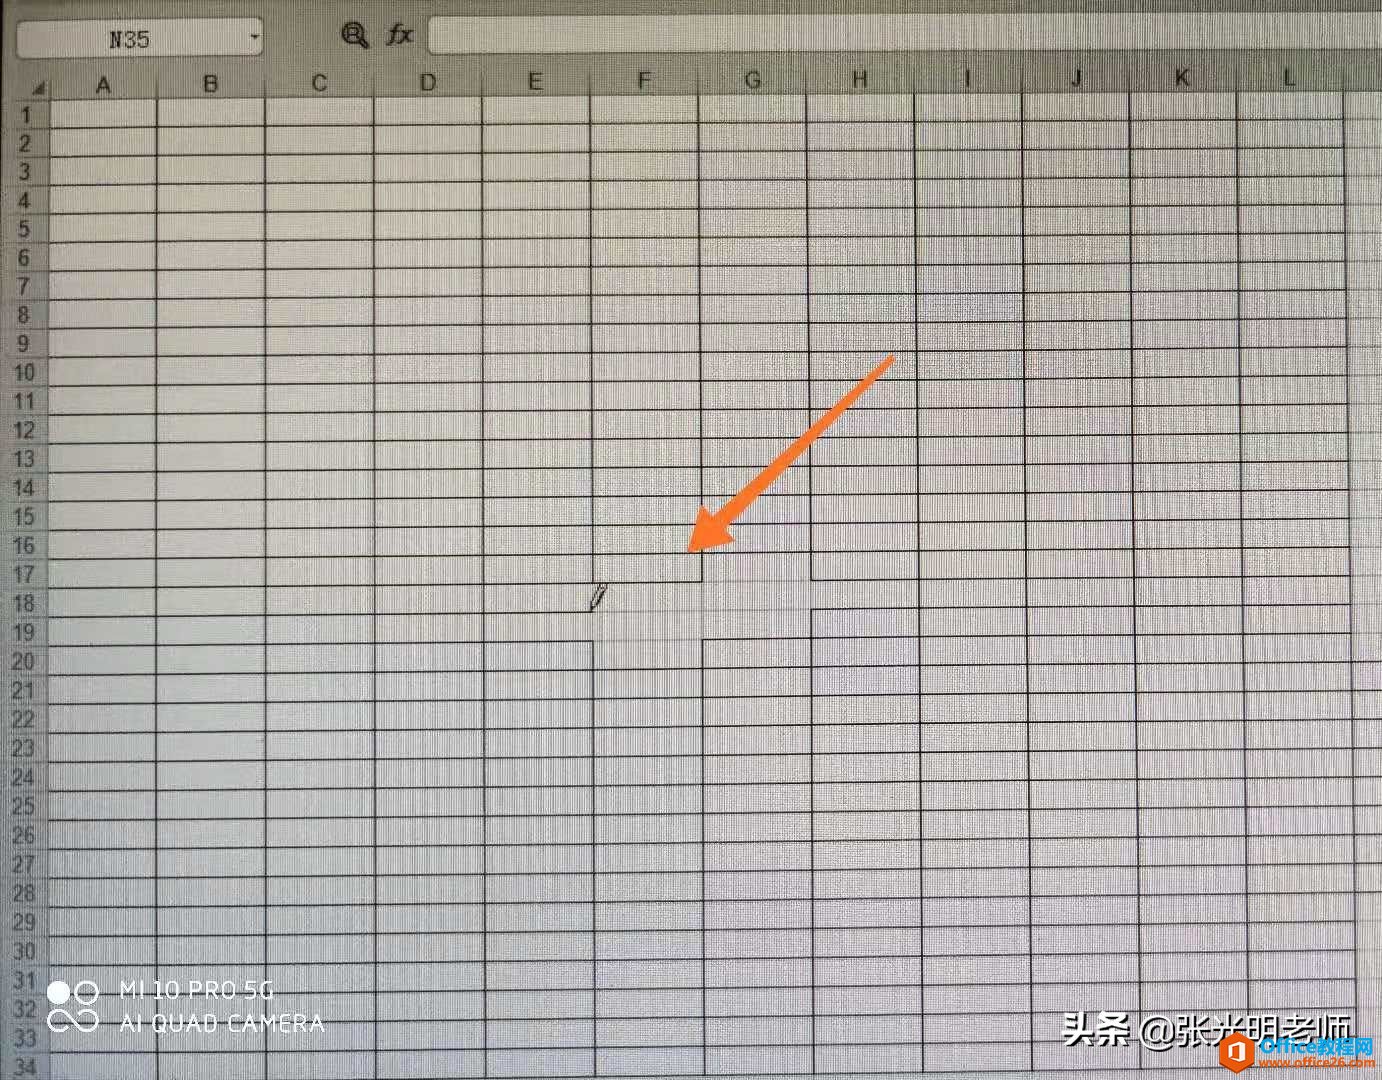 Excel表格中大部分边框画了，但有部分边框没有画，是网格线